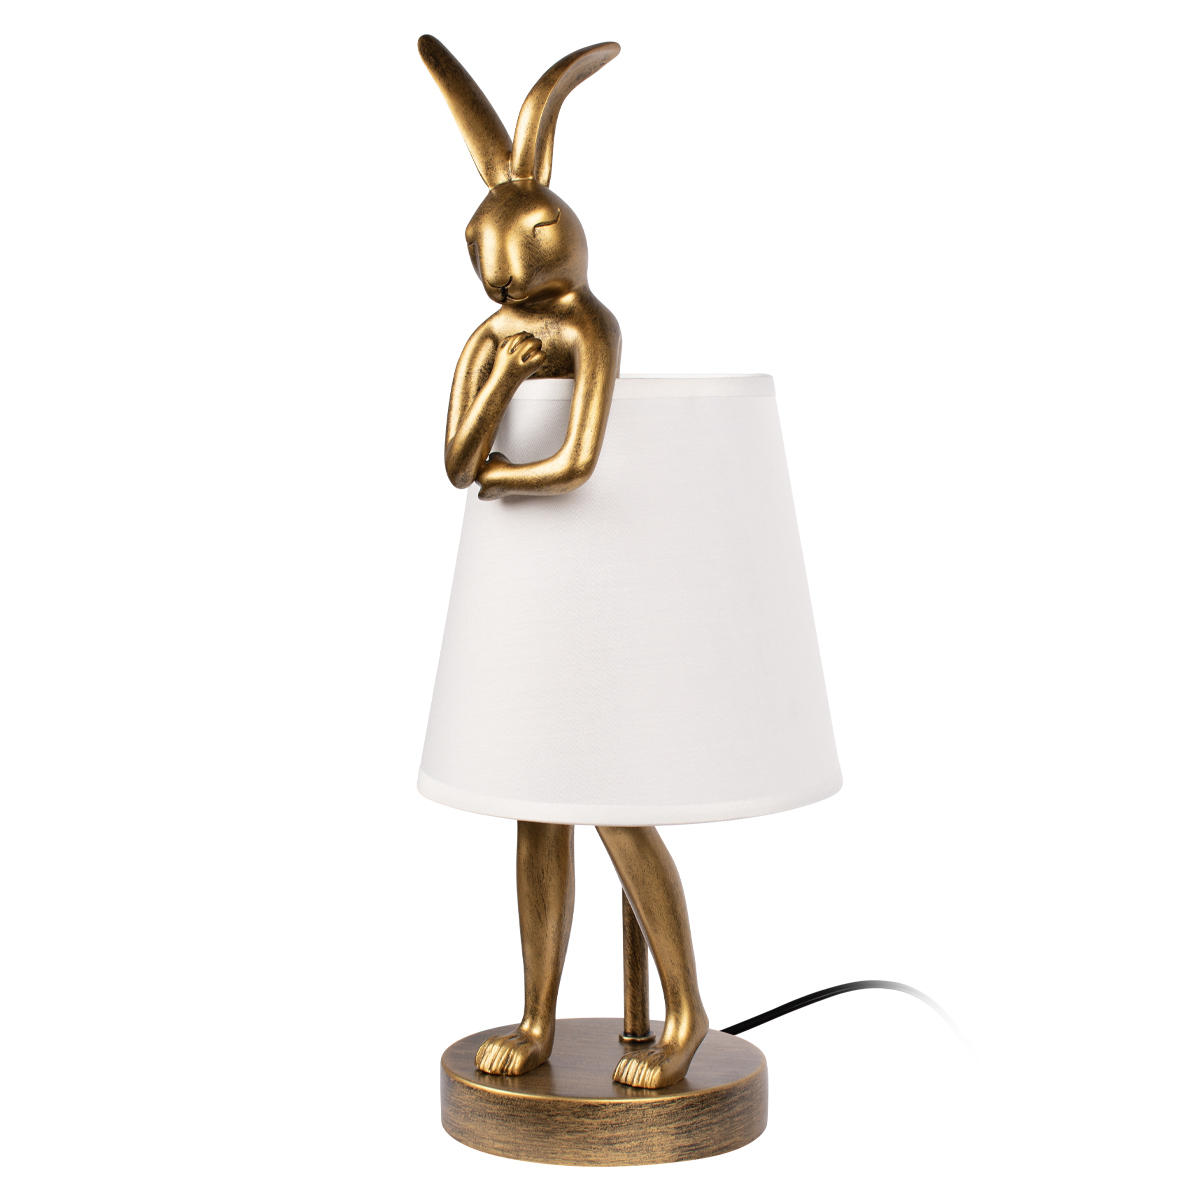 Настольная дизайнерская лампа кролик Loft IT Lapine 10315/A White